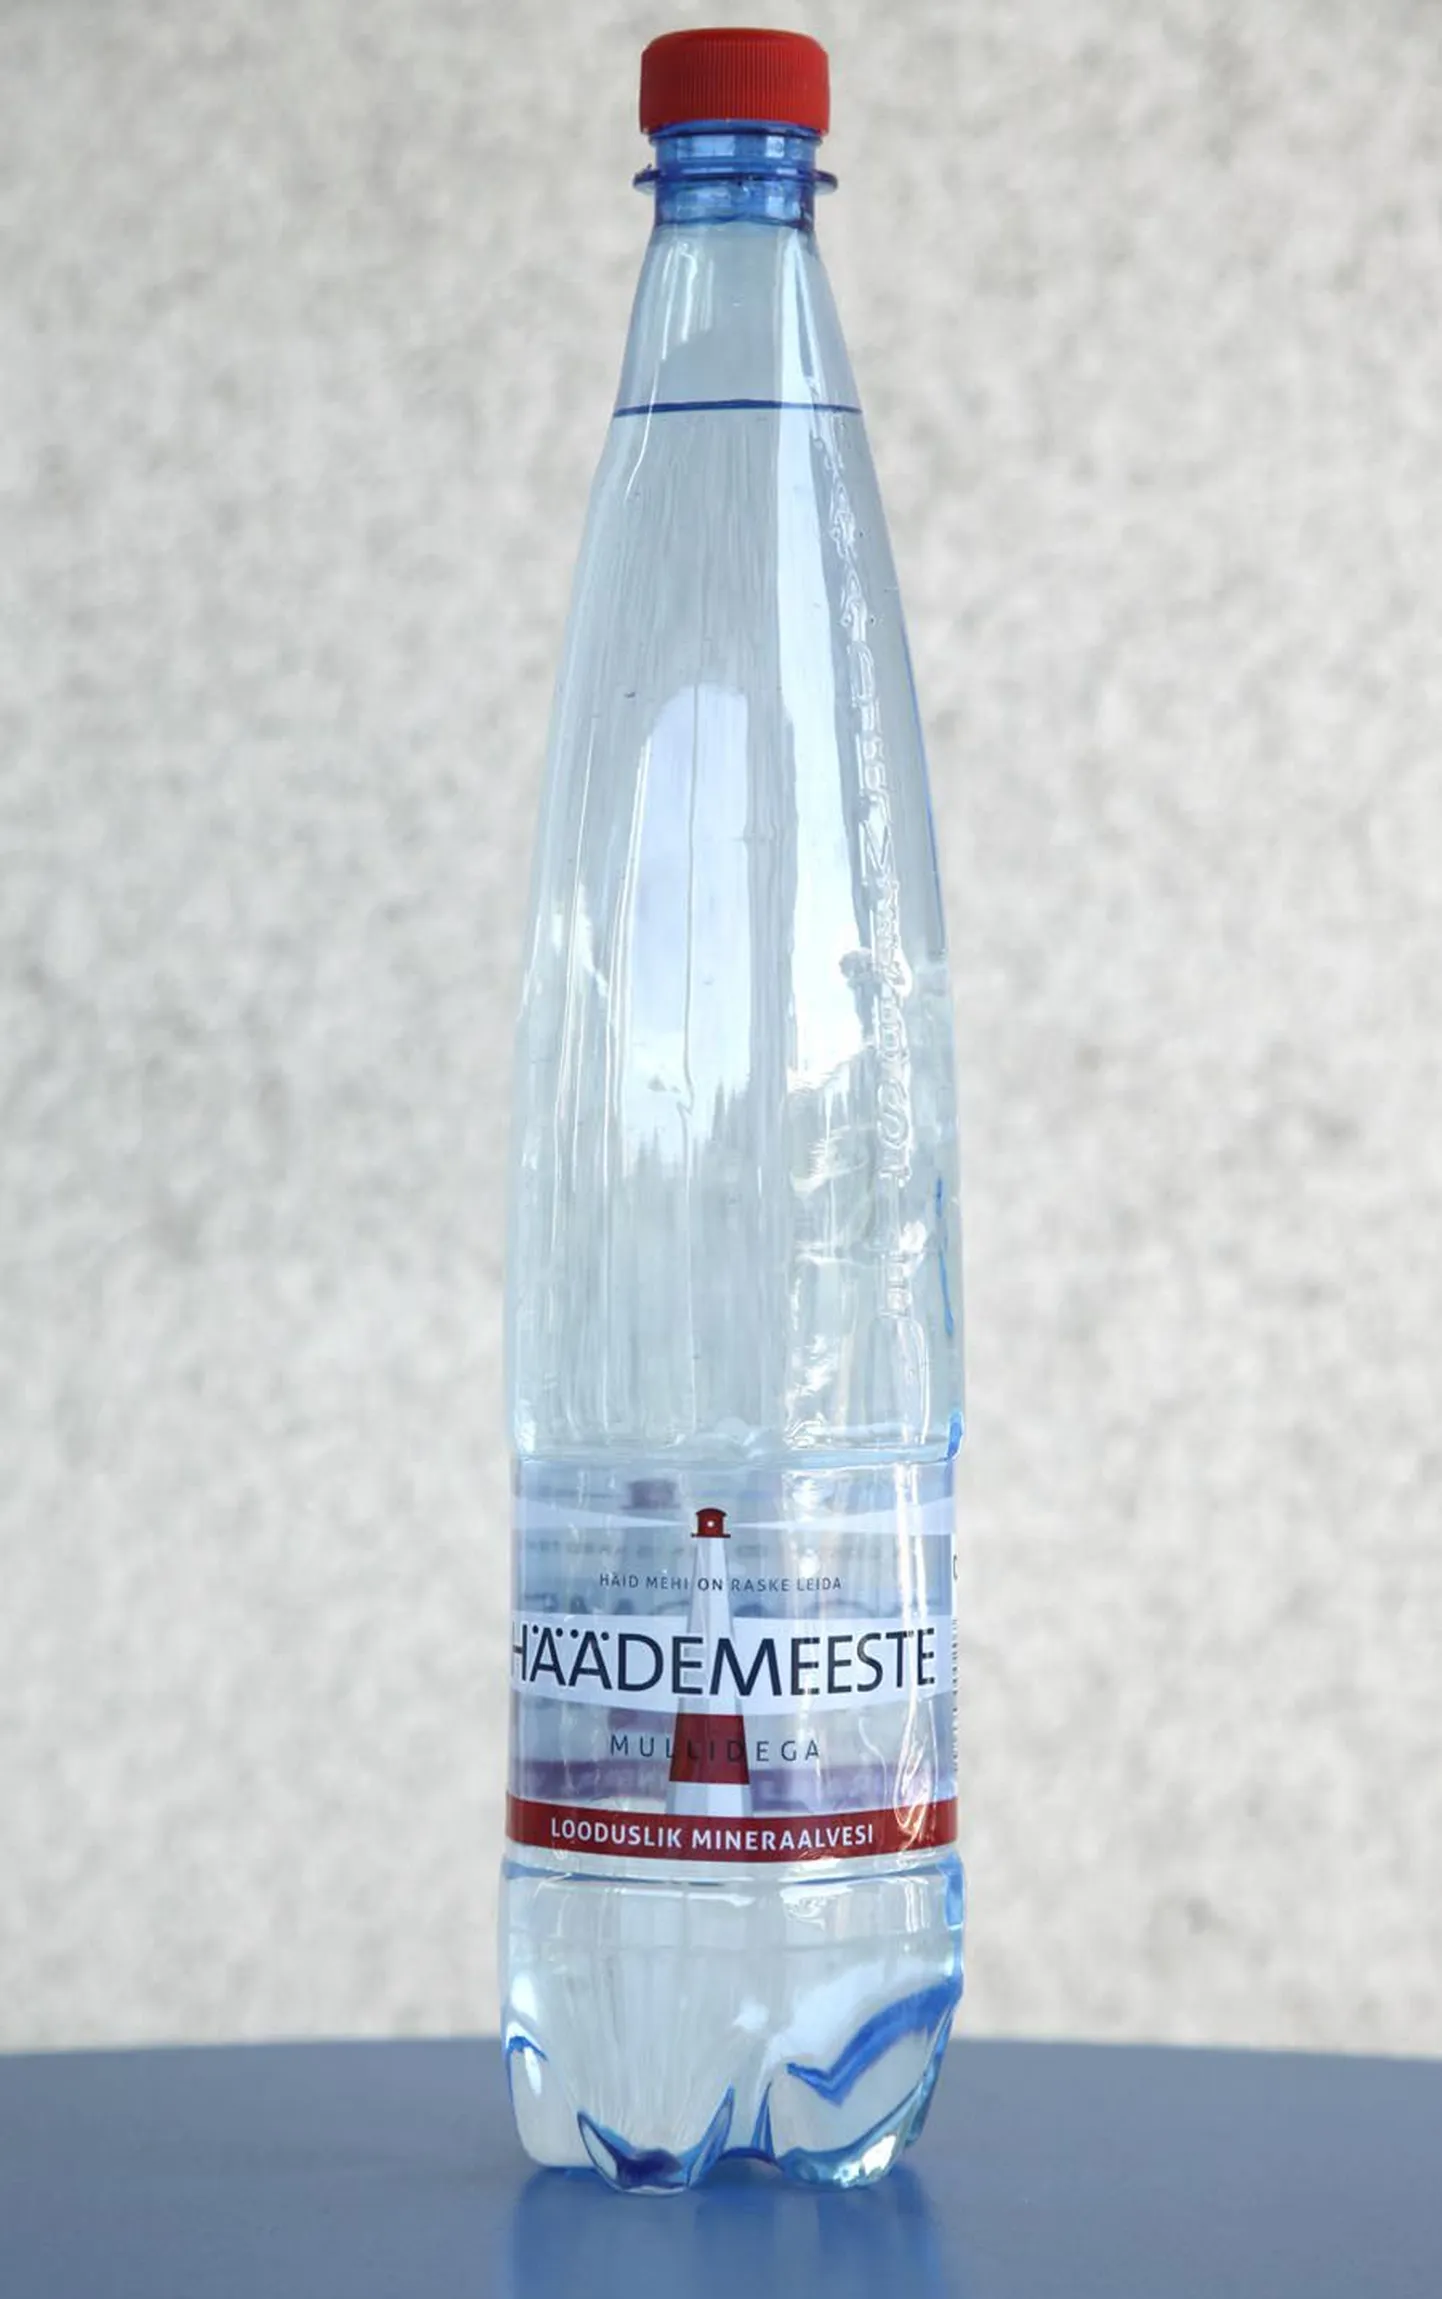 Häädemeeste looduslik mineraalvesi (Eesti)
Mineraalainete sisaldus 2–3,6 g/l
Mai Maser: «Suhteliselt suure soolasisaldusega vesi. Selles on võrreldes teiste mineraalvetega kõige rohkem kaltsiumi.»